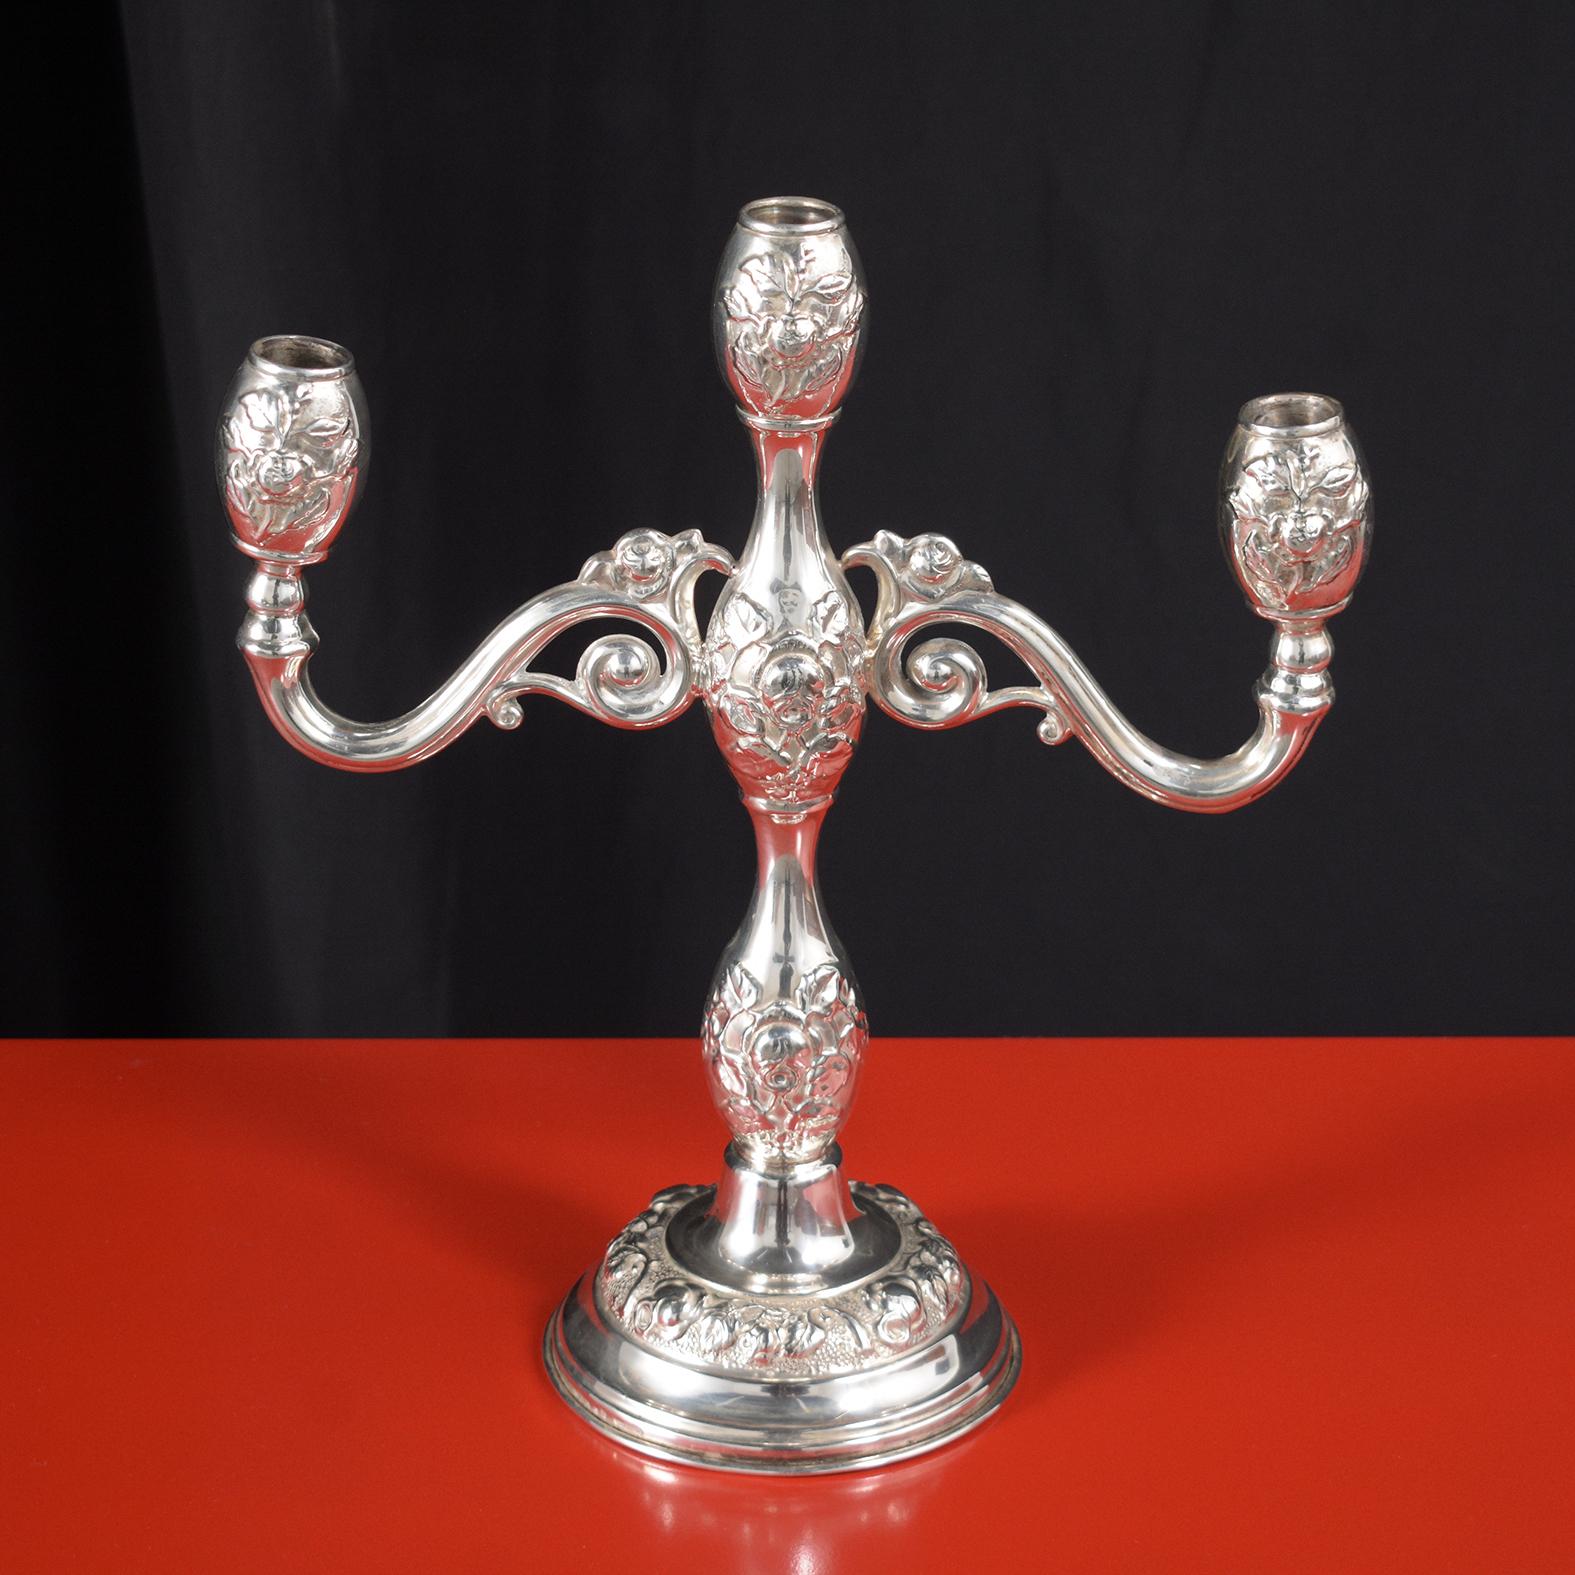 Dieser außergewöhnliche Kerzenhalter ist in sehr gutem Zustand und wunderschön aus Sterlingsilber gefertigt. Das Stück verfügt über drei Arme mit schönen Details, die frisch gereinigt und poliert sind und eine einzigartige Patina entwickeln.